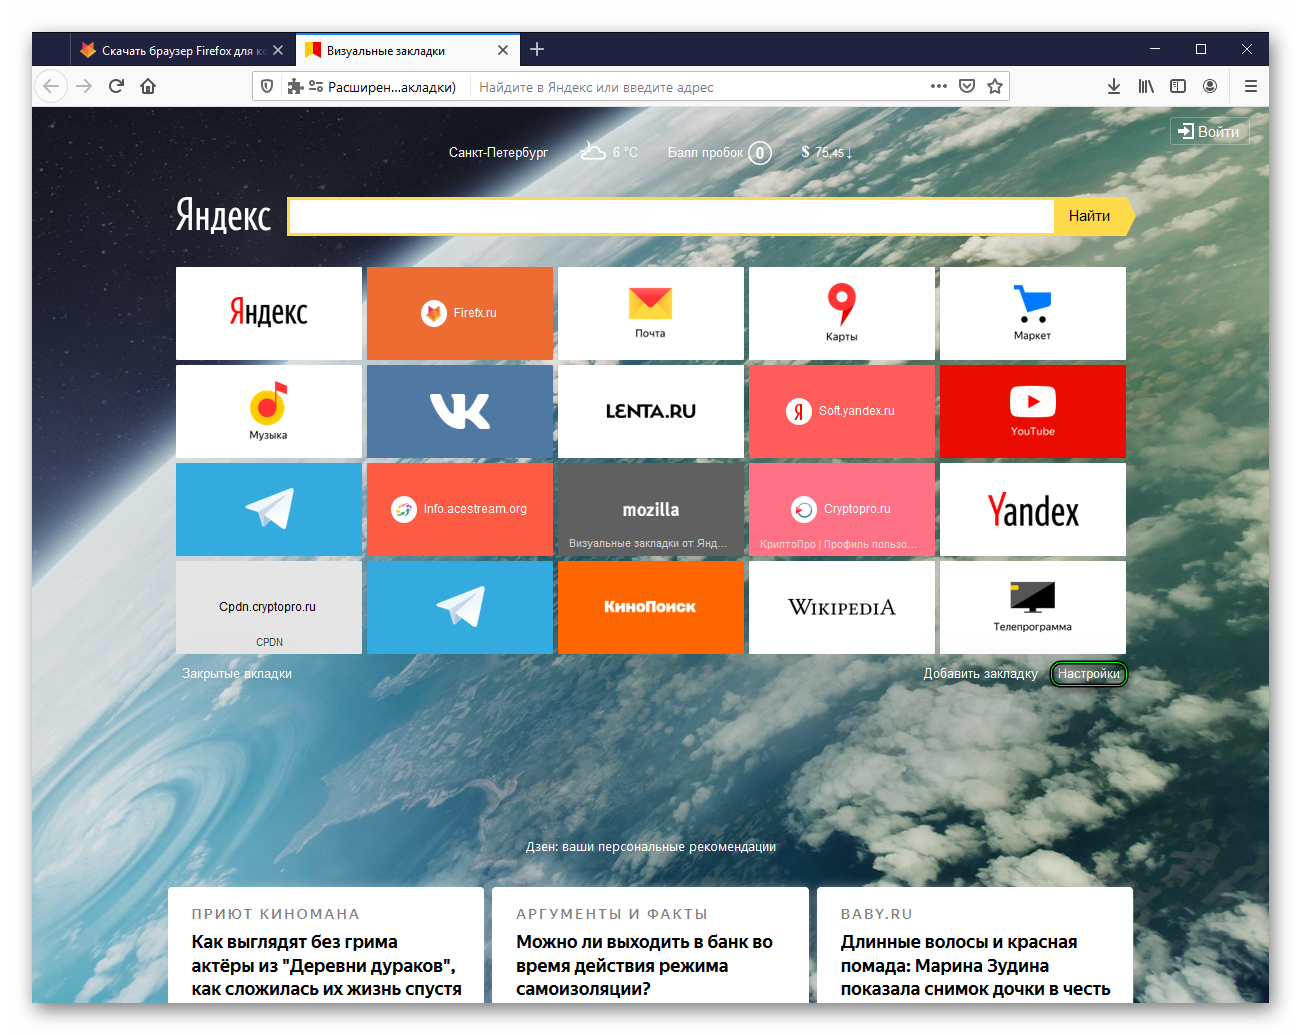 Установка и настройка в браузере Firefox расширений Визуальные закладки Яндекс для Mozilla Firefox и расширения Super Start